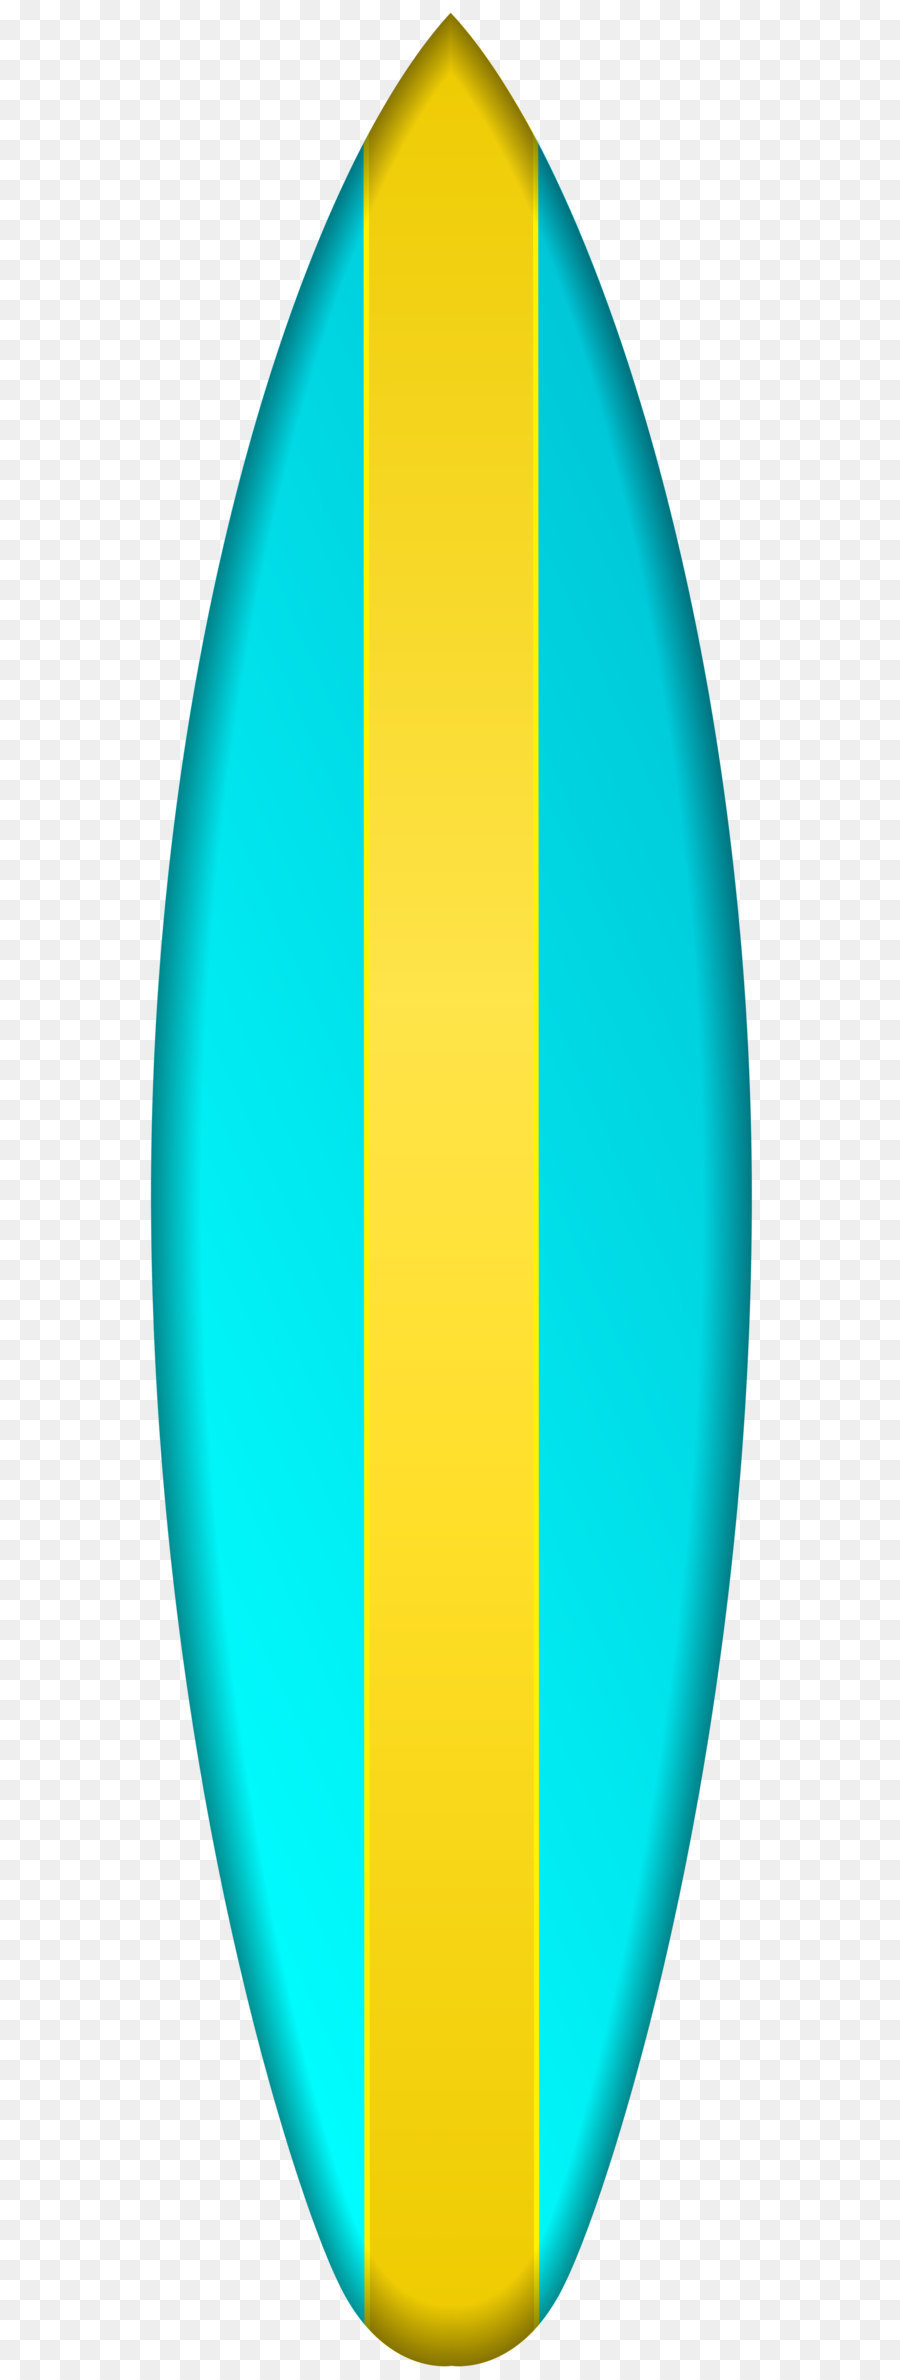 Surfboard jesusboard Surfing - Surfboard Transparent PNG Clip Art png download - 2190*8000 - Free Transparent Surfing png Download.